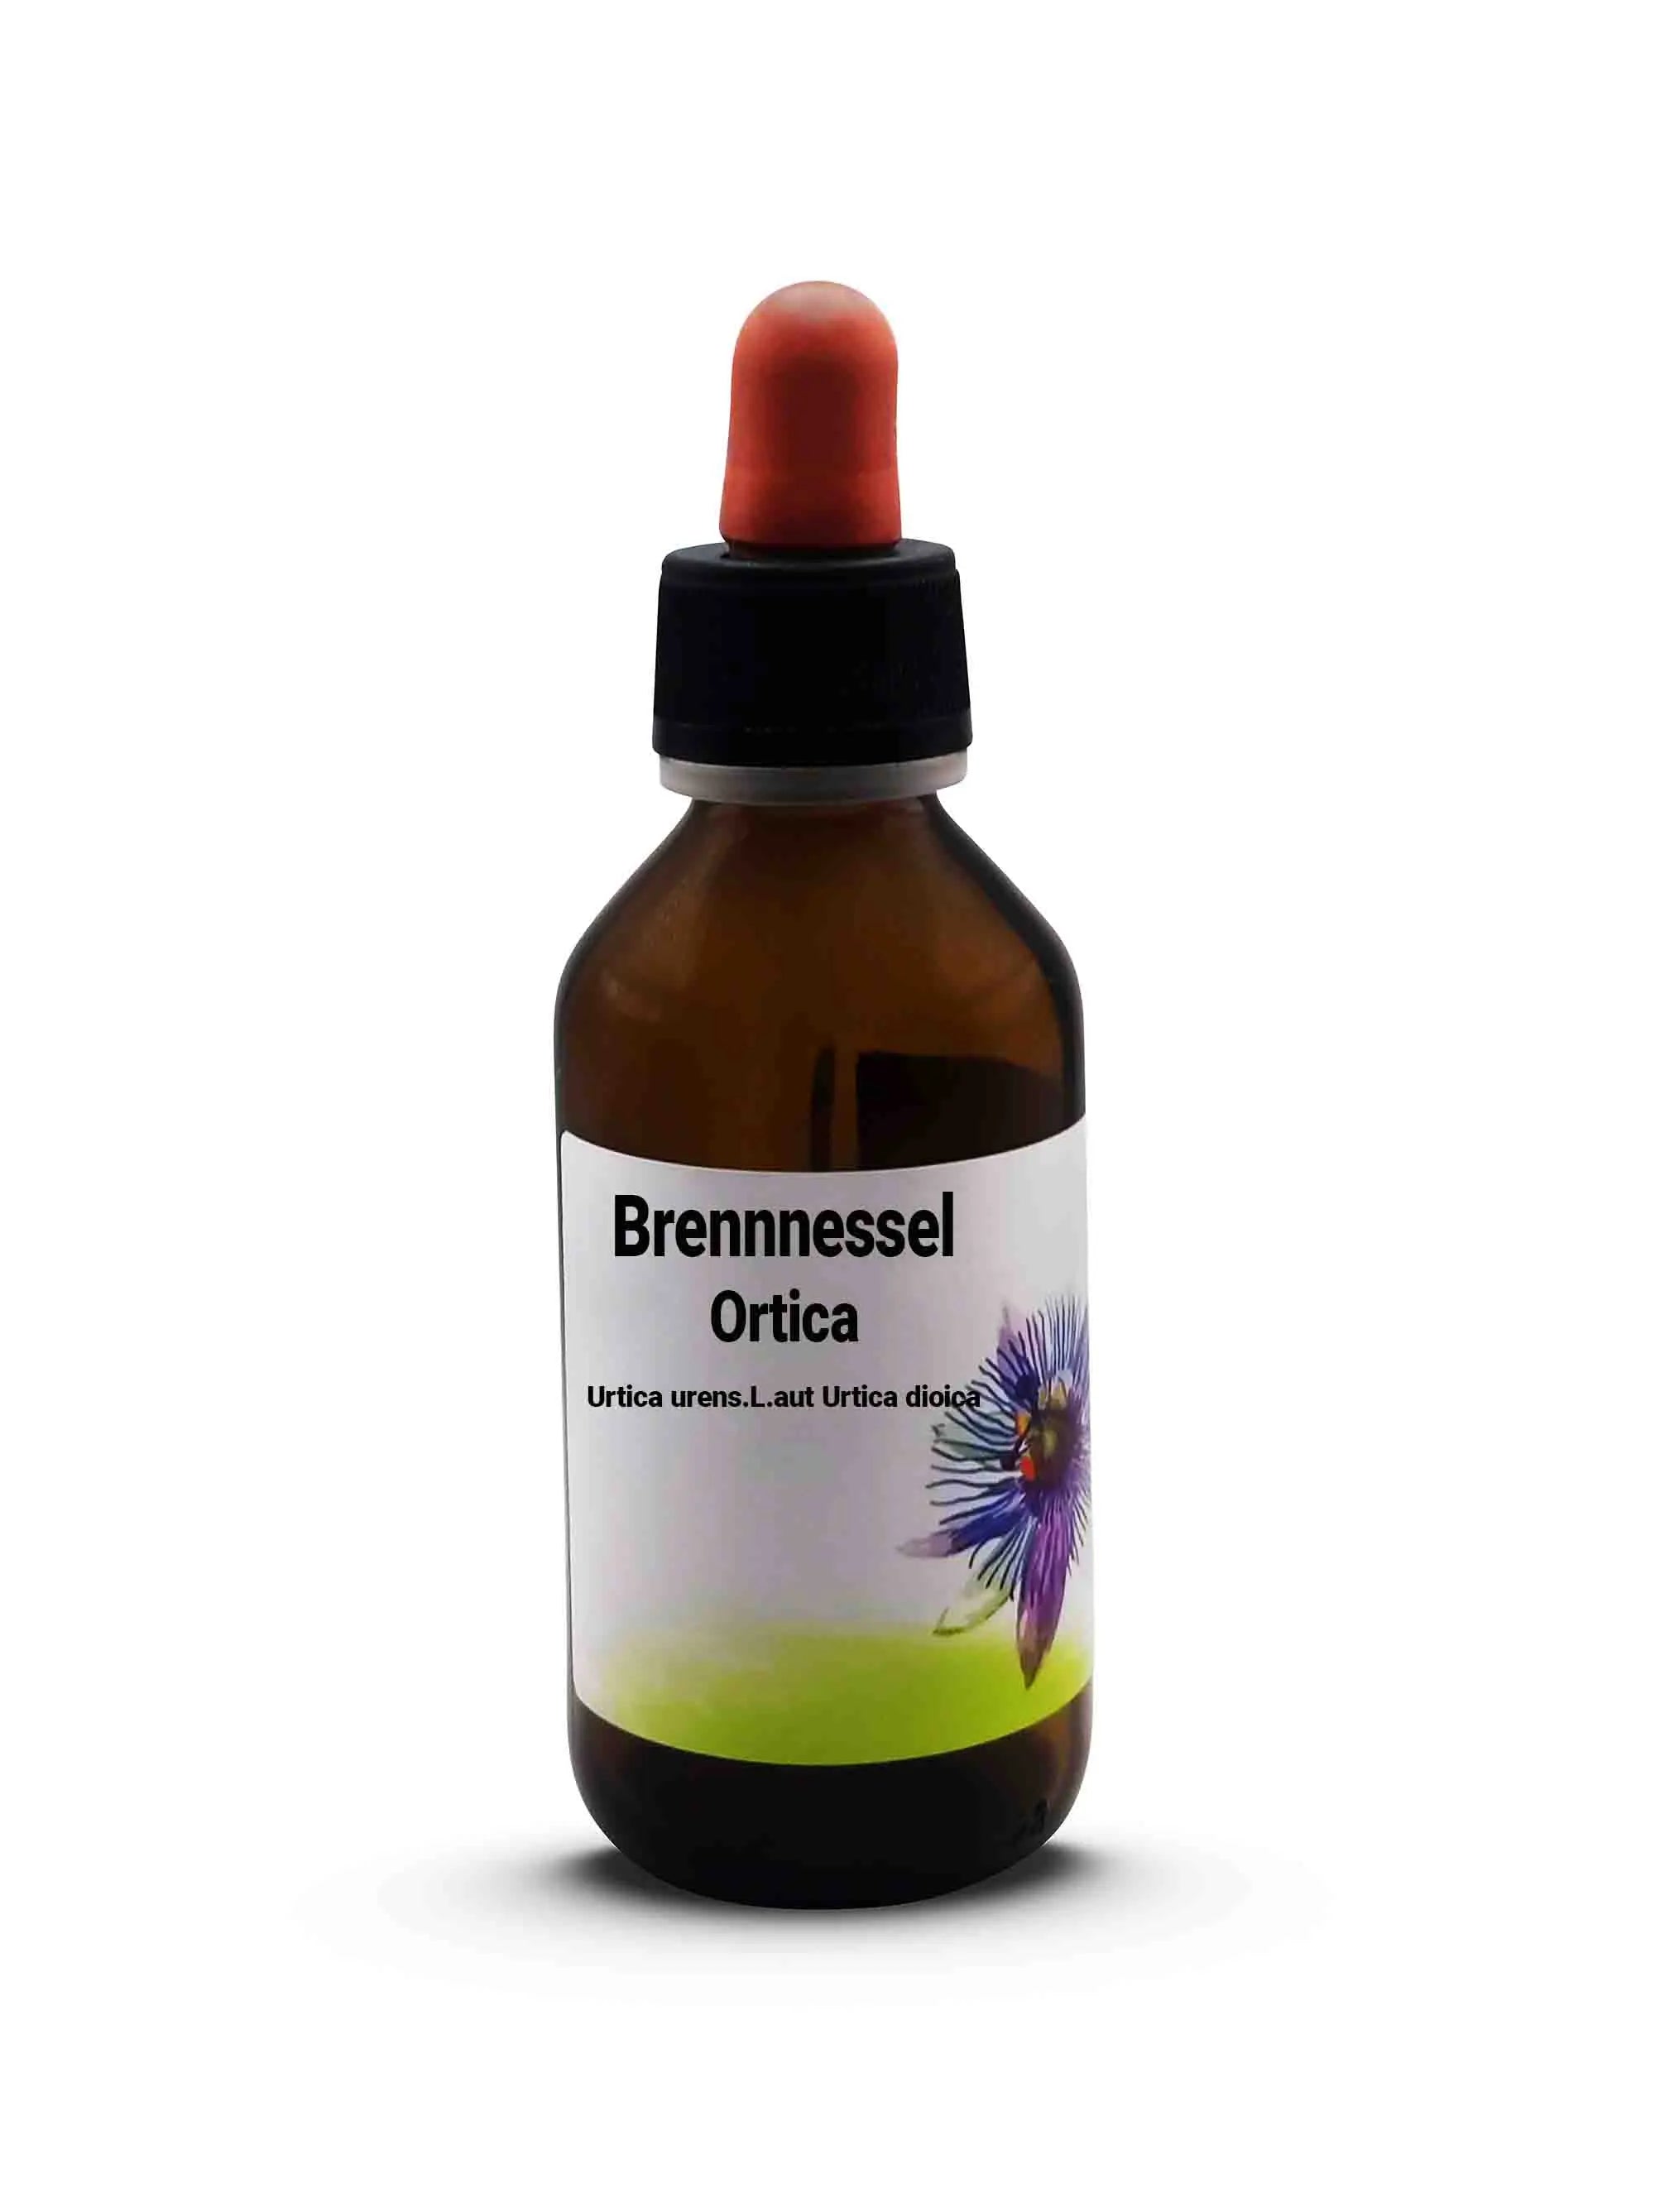 Brennnessel Ortica Urtica urens. L. aut Urtica dioica 100 ml